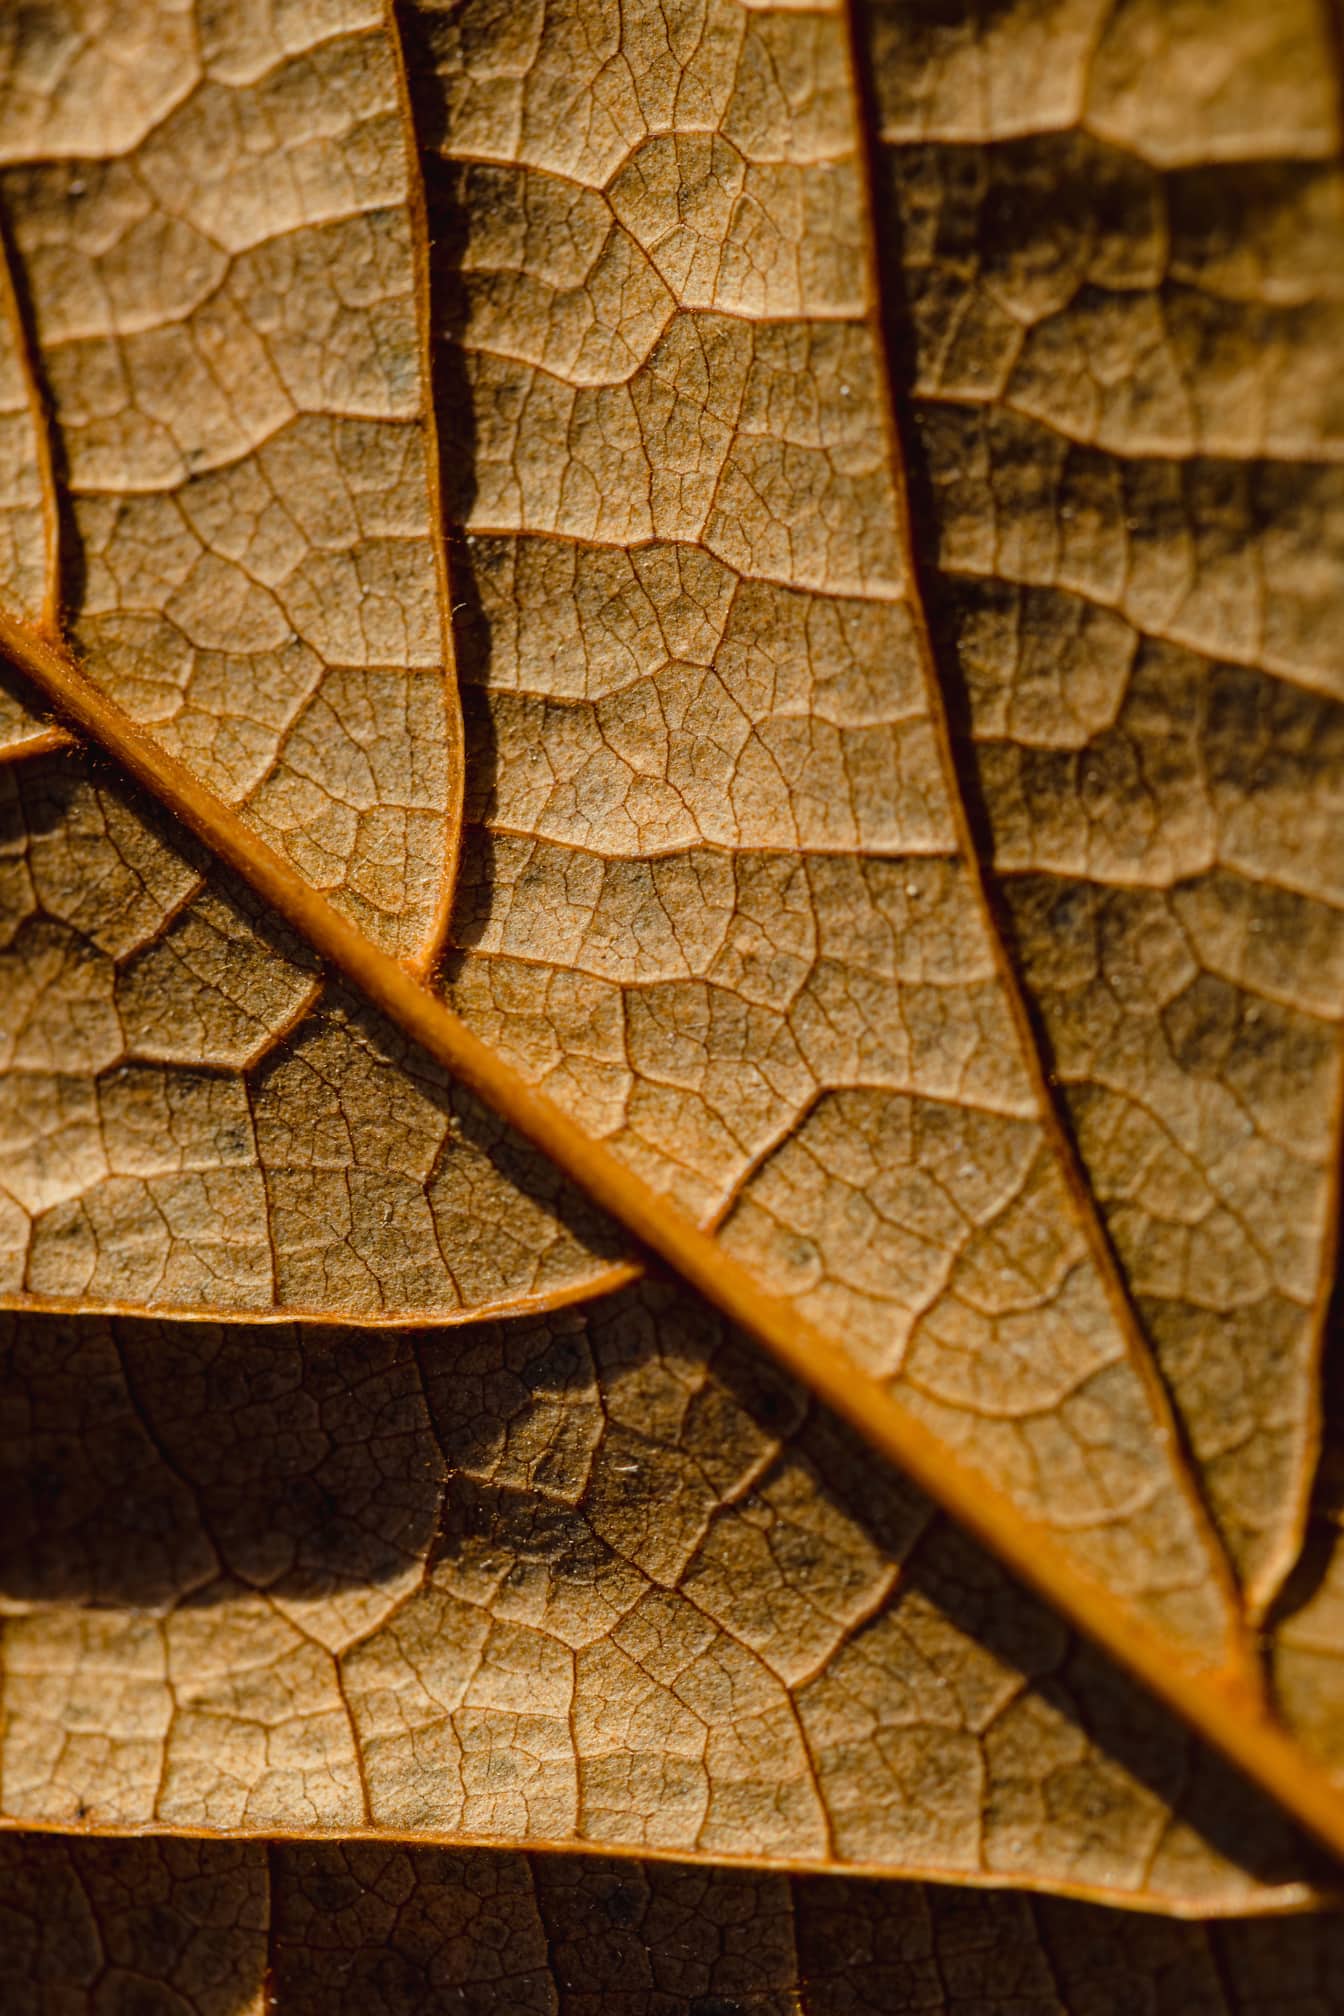 Μακρο φωτογραφία ξηρού κιτρινωπού καφέ φύλλου με λεπτομερή υφή